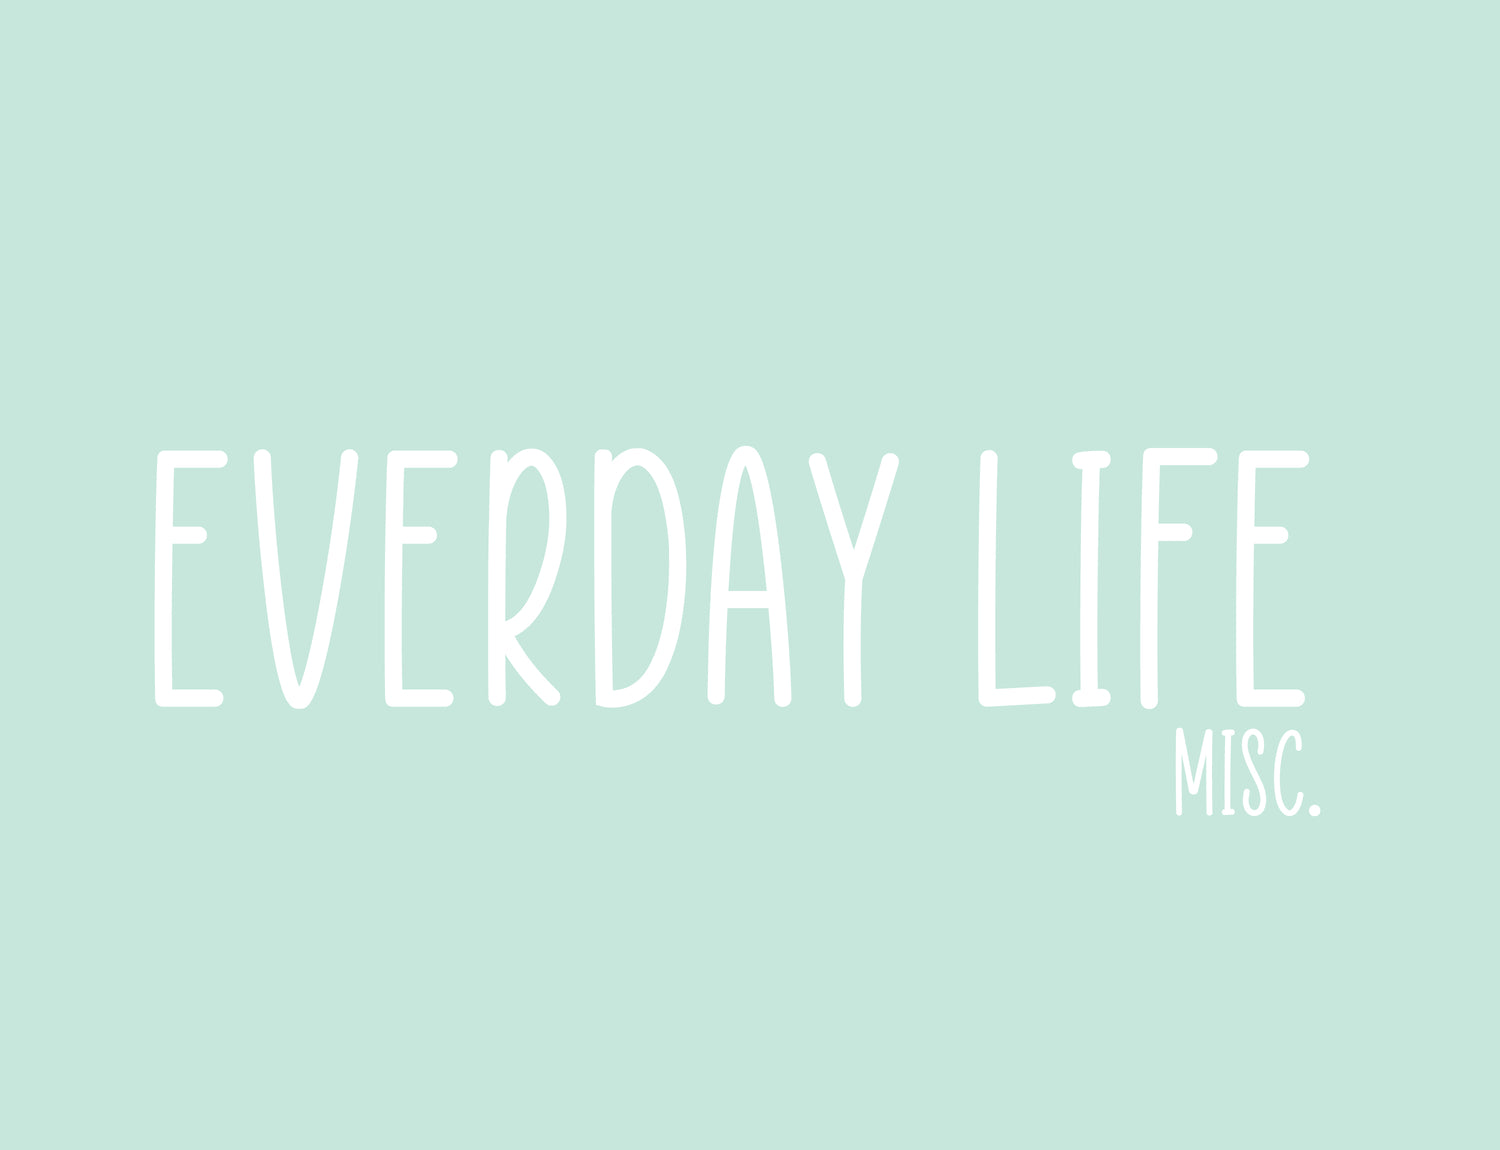 Everyday, Misc.